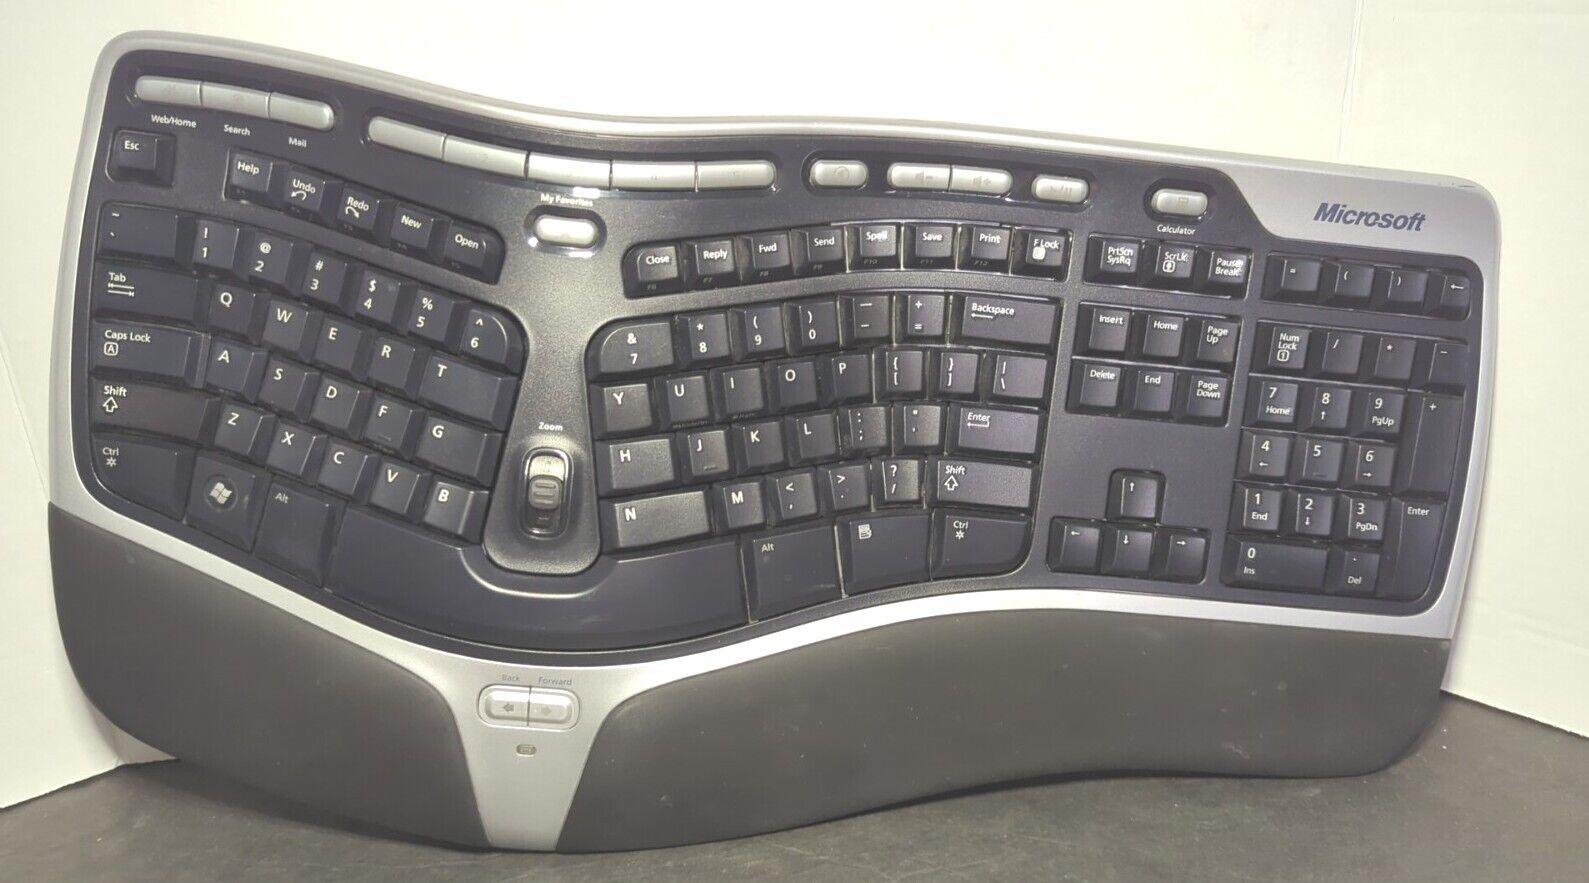 Microsoft Natural Wireless Ergonomic Keyboard 7000 NO USB Dongle - UNTESTED